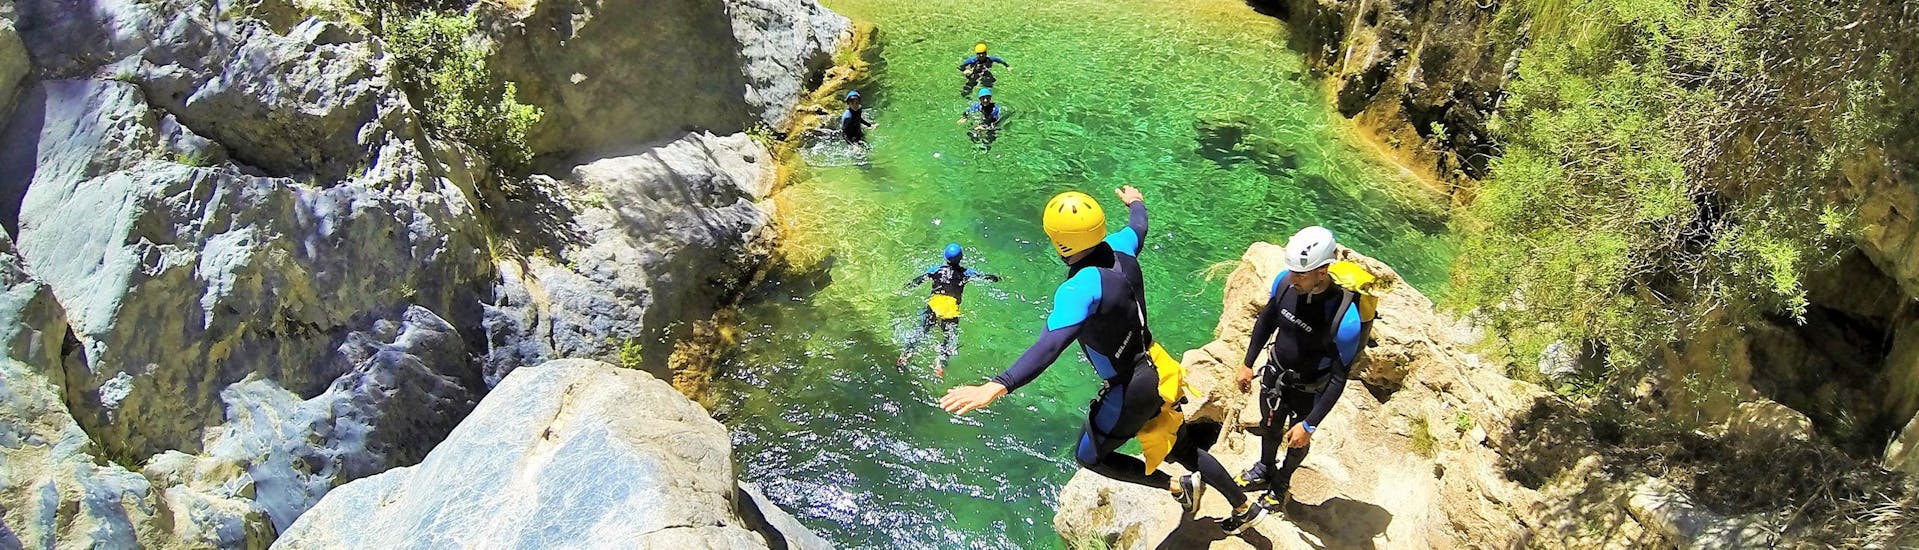 Einige Teilnehmer haben Spaß während ihrer Canyoning Tour mit Barranquismo Rio Verde, während sie von einer Klippe in die glasklaren Gewässer springen.